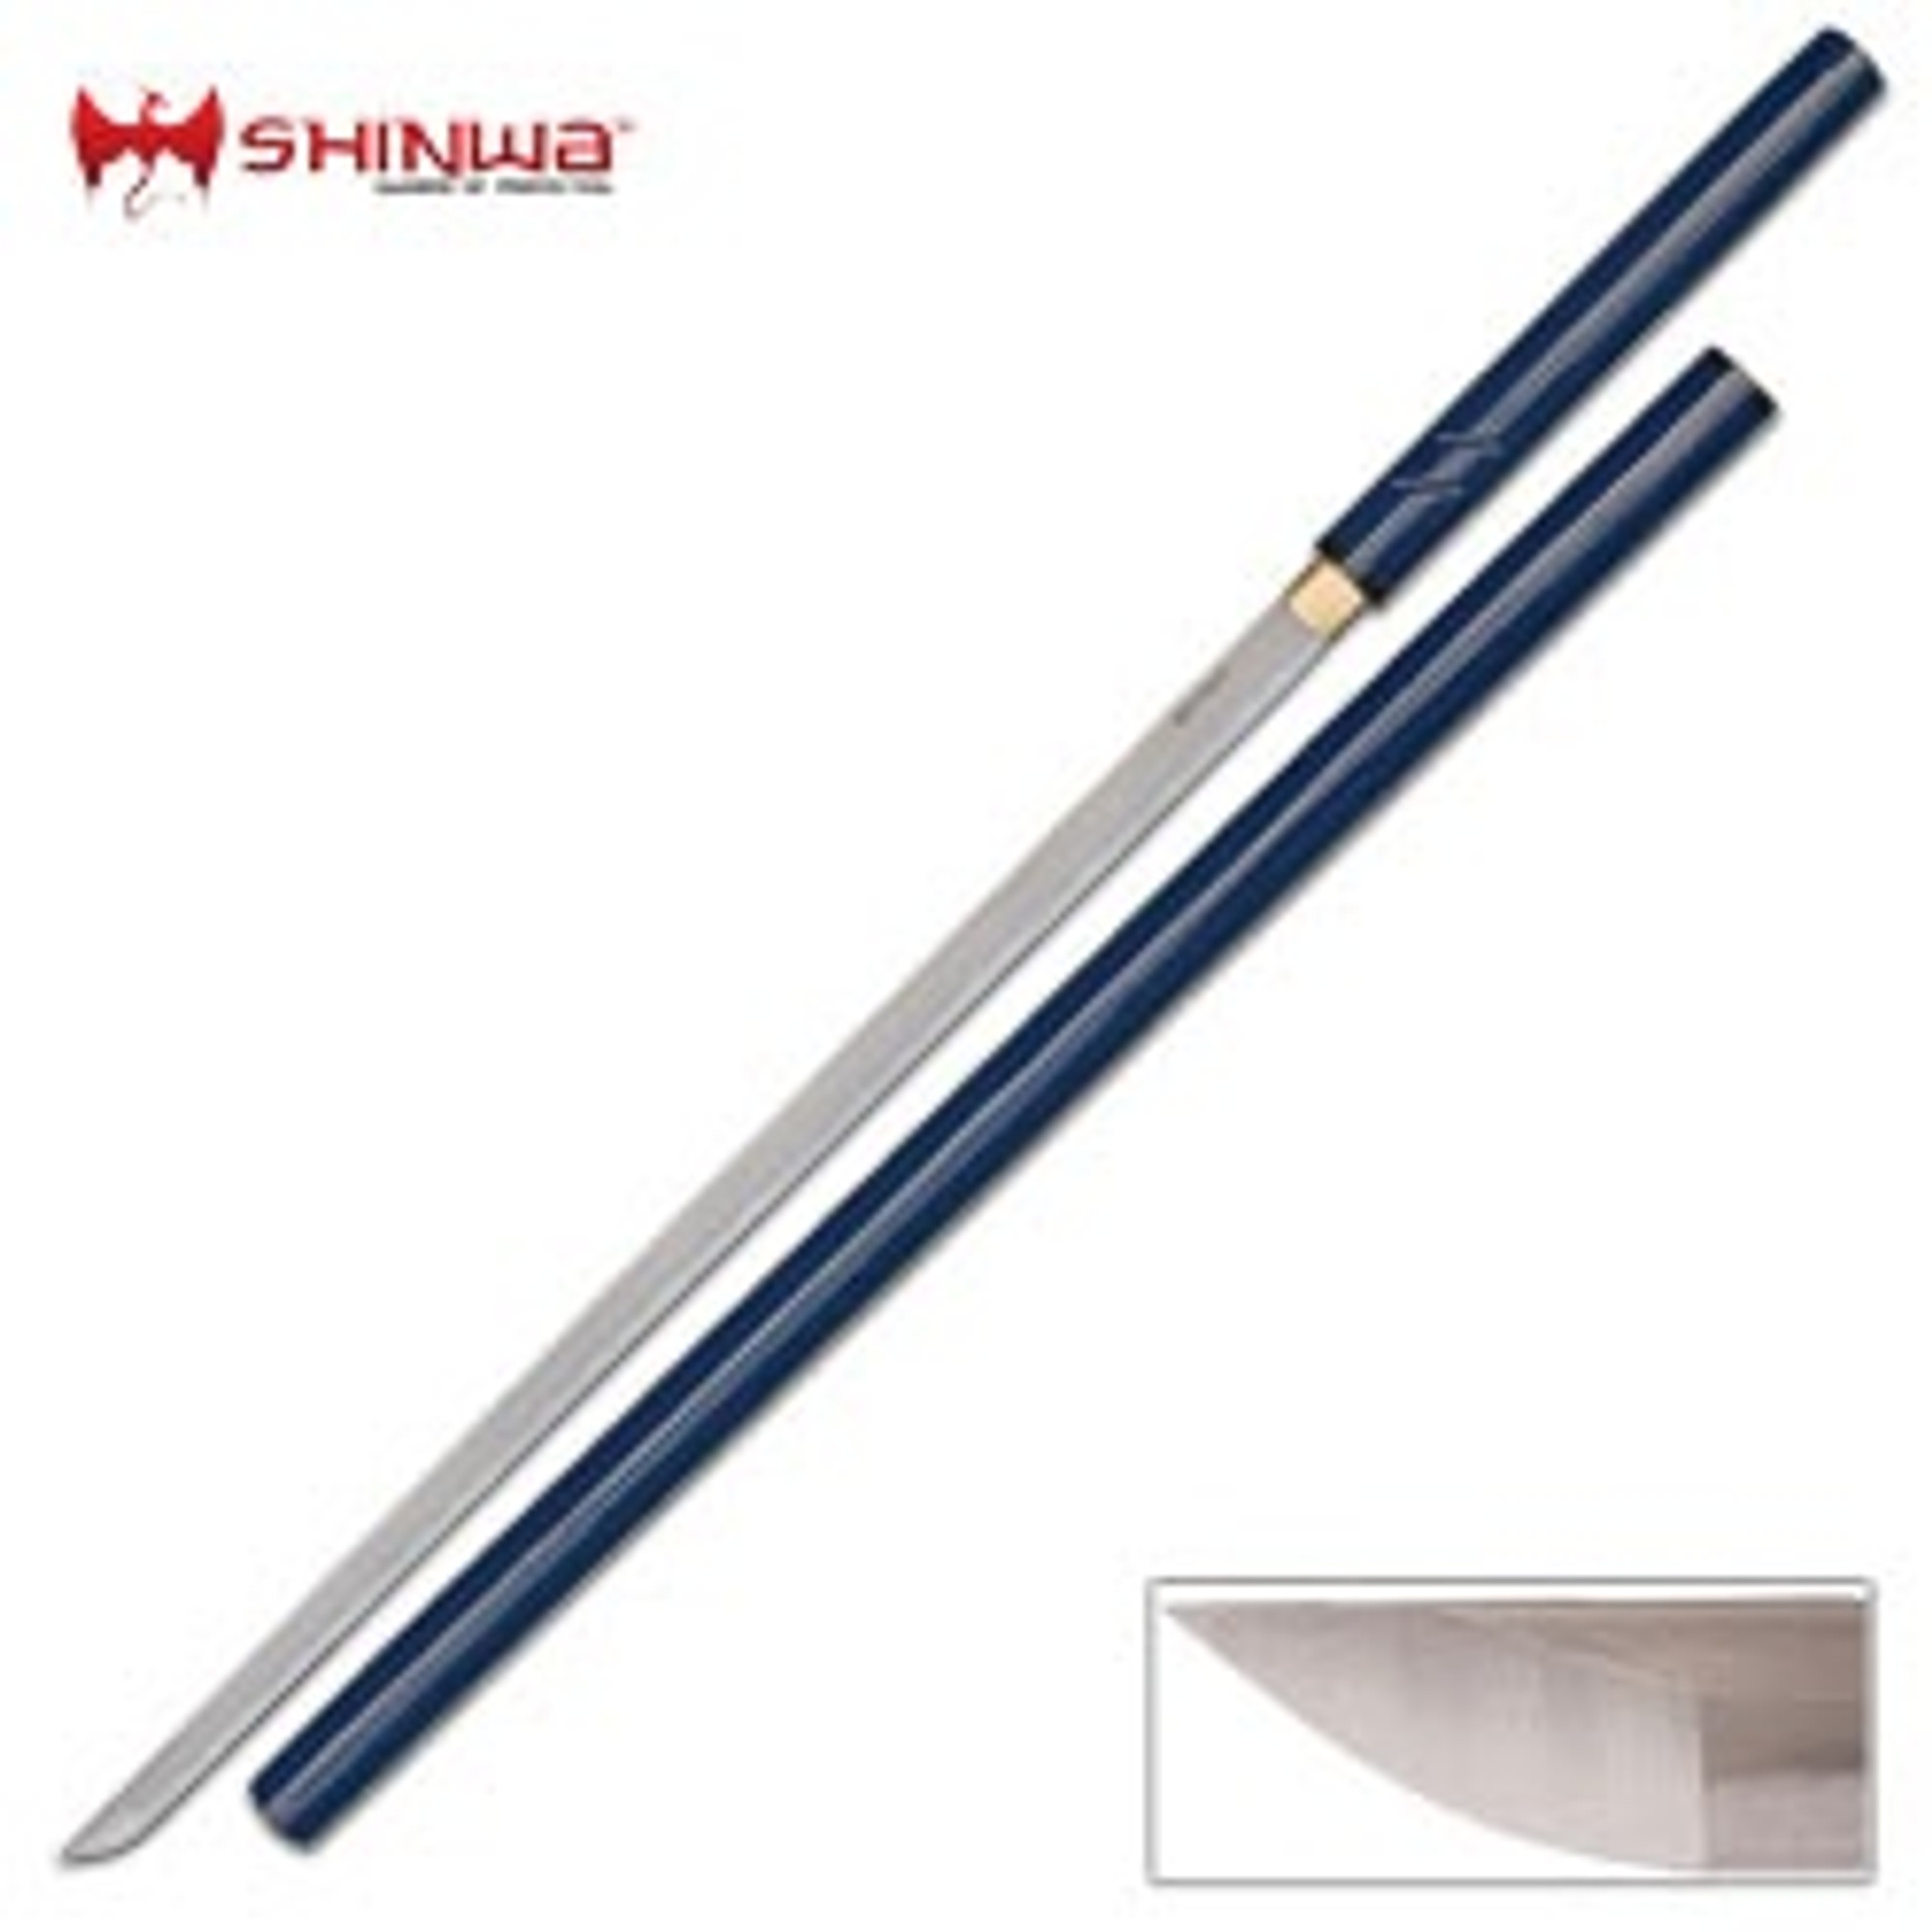 Shinwa Nodachi Sword Damascus - Blue